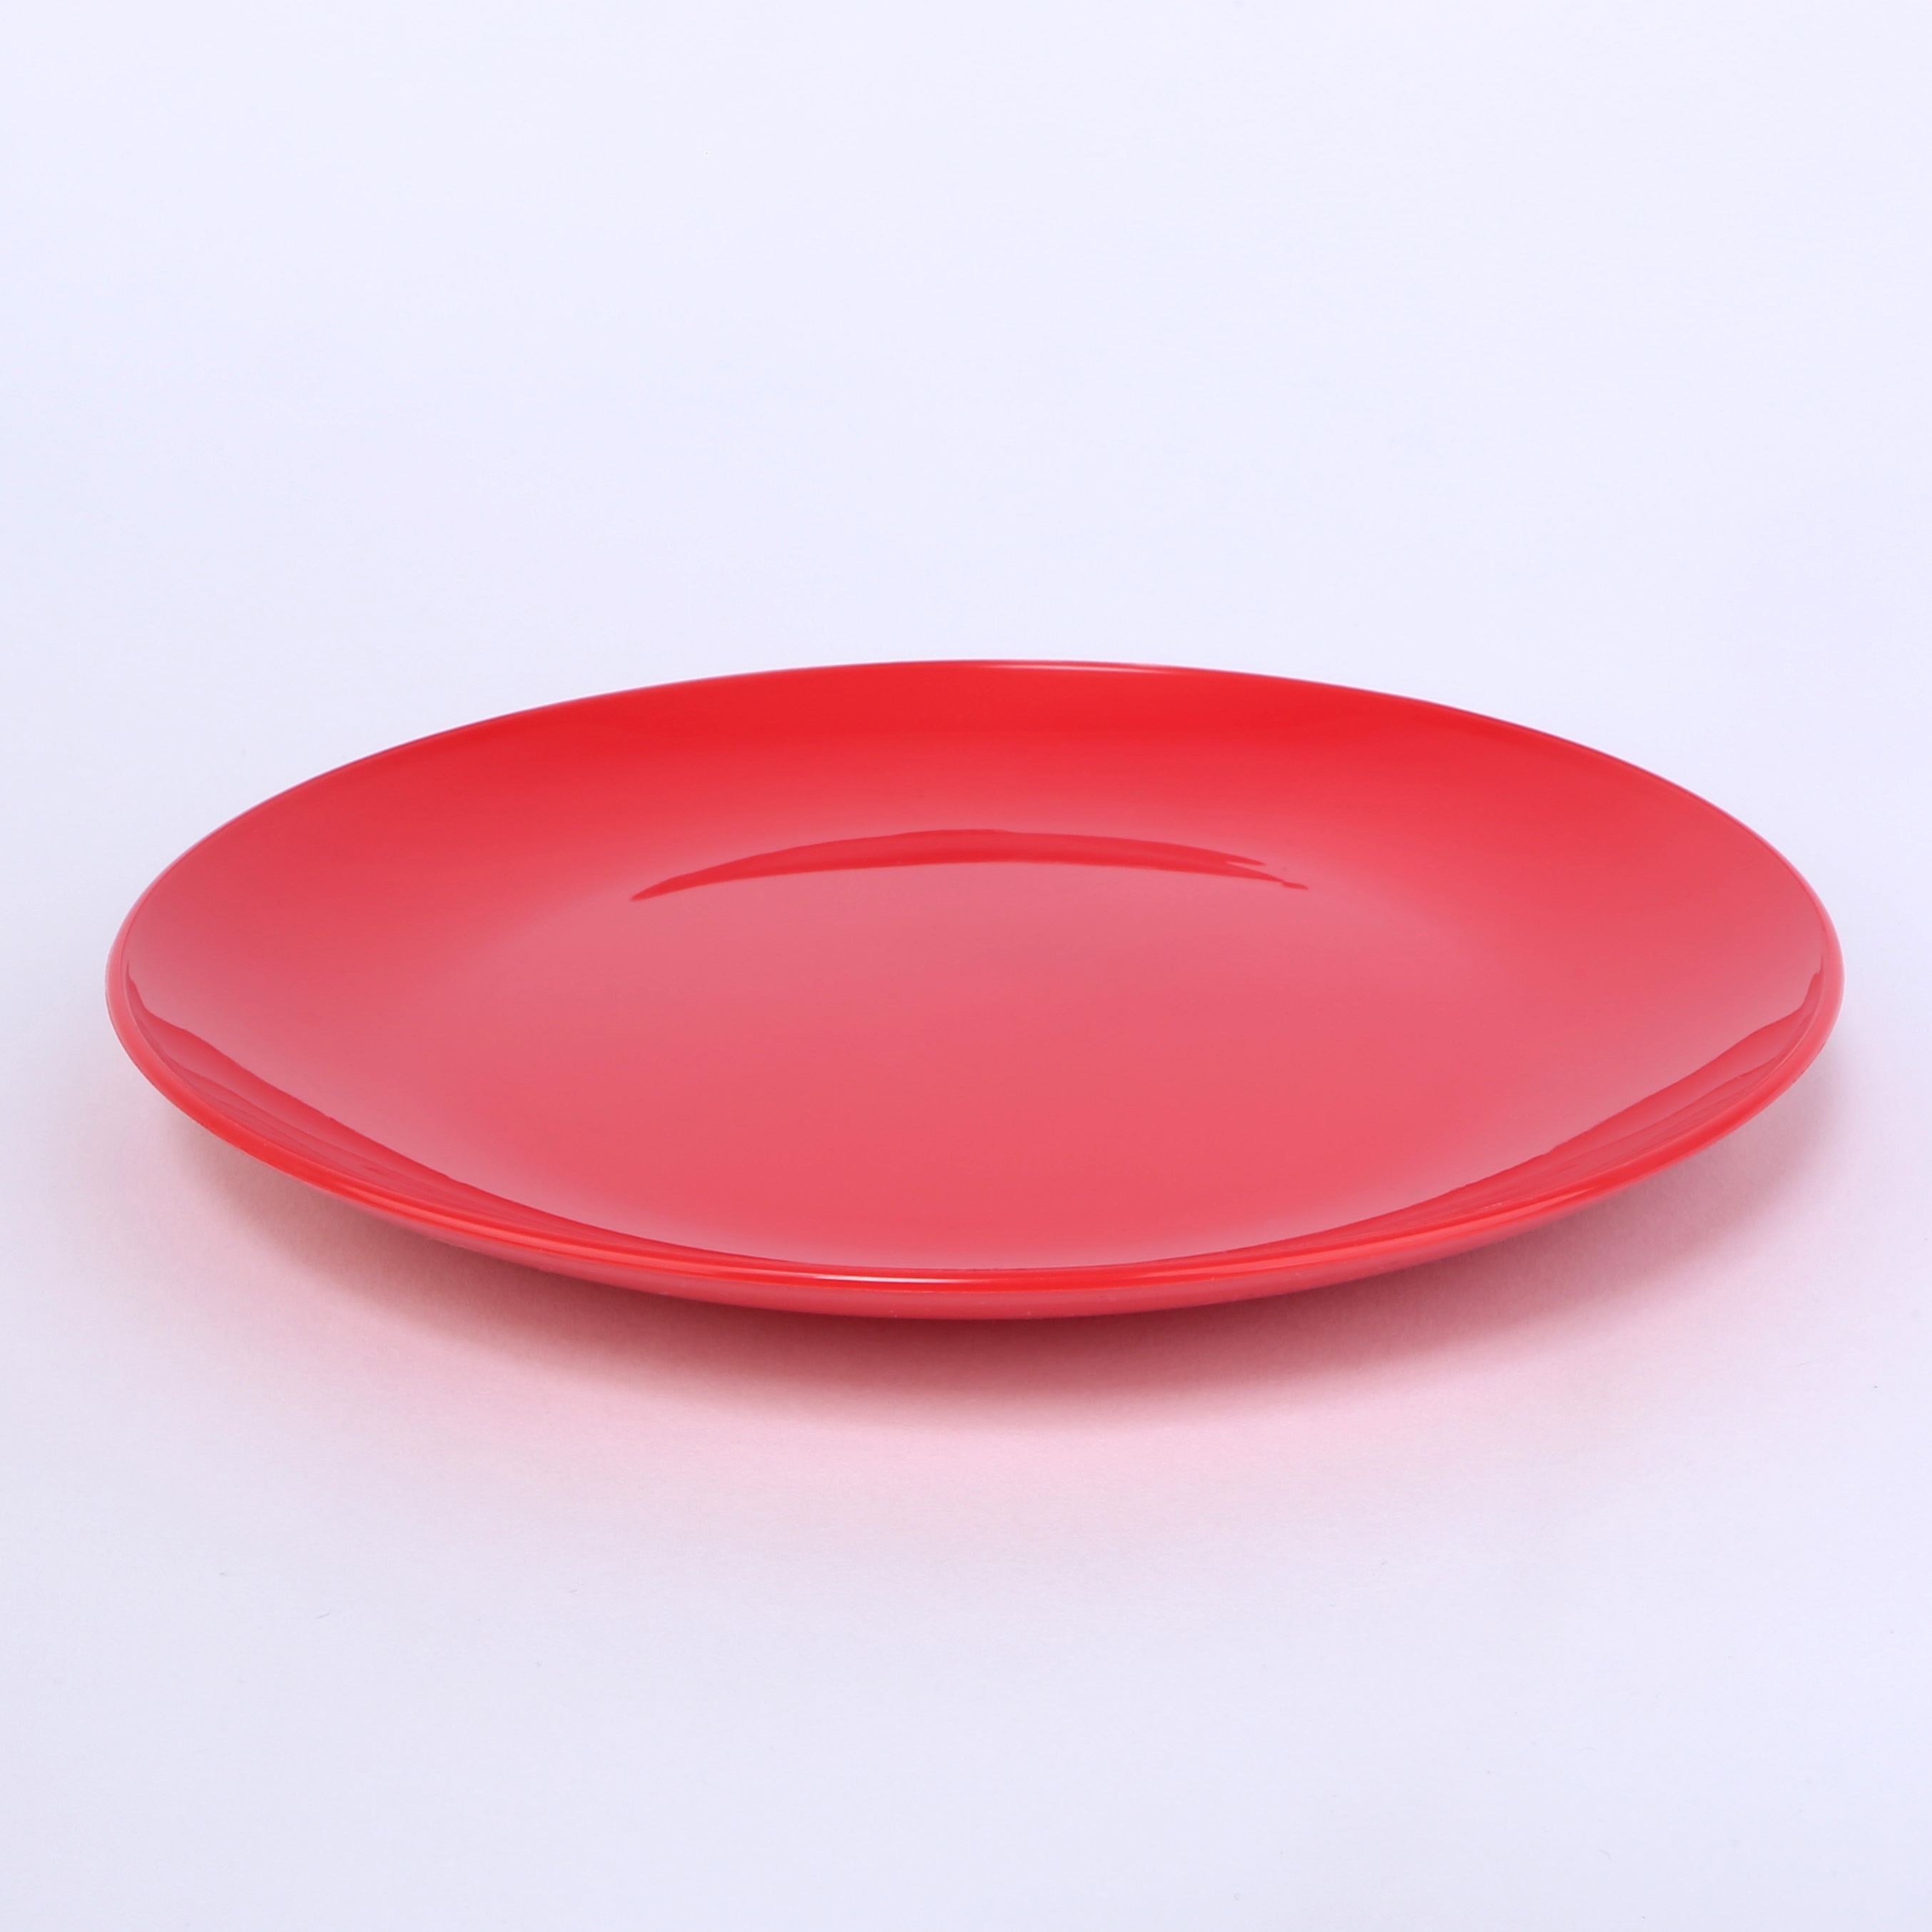 vaLon Zephyr Dessertteller 19 cm aus schadstofffreiem Kunststoff in der Farbe rot: